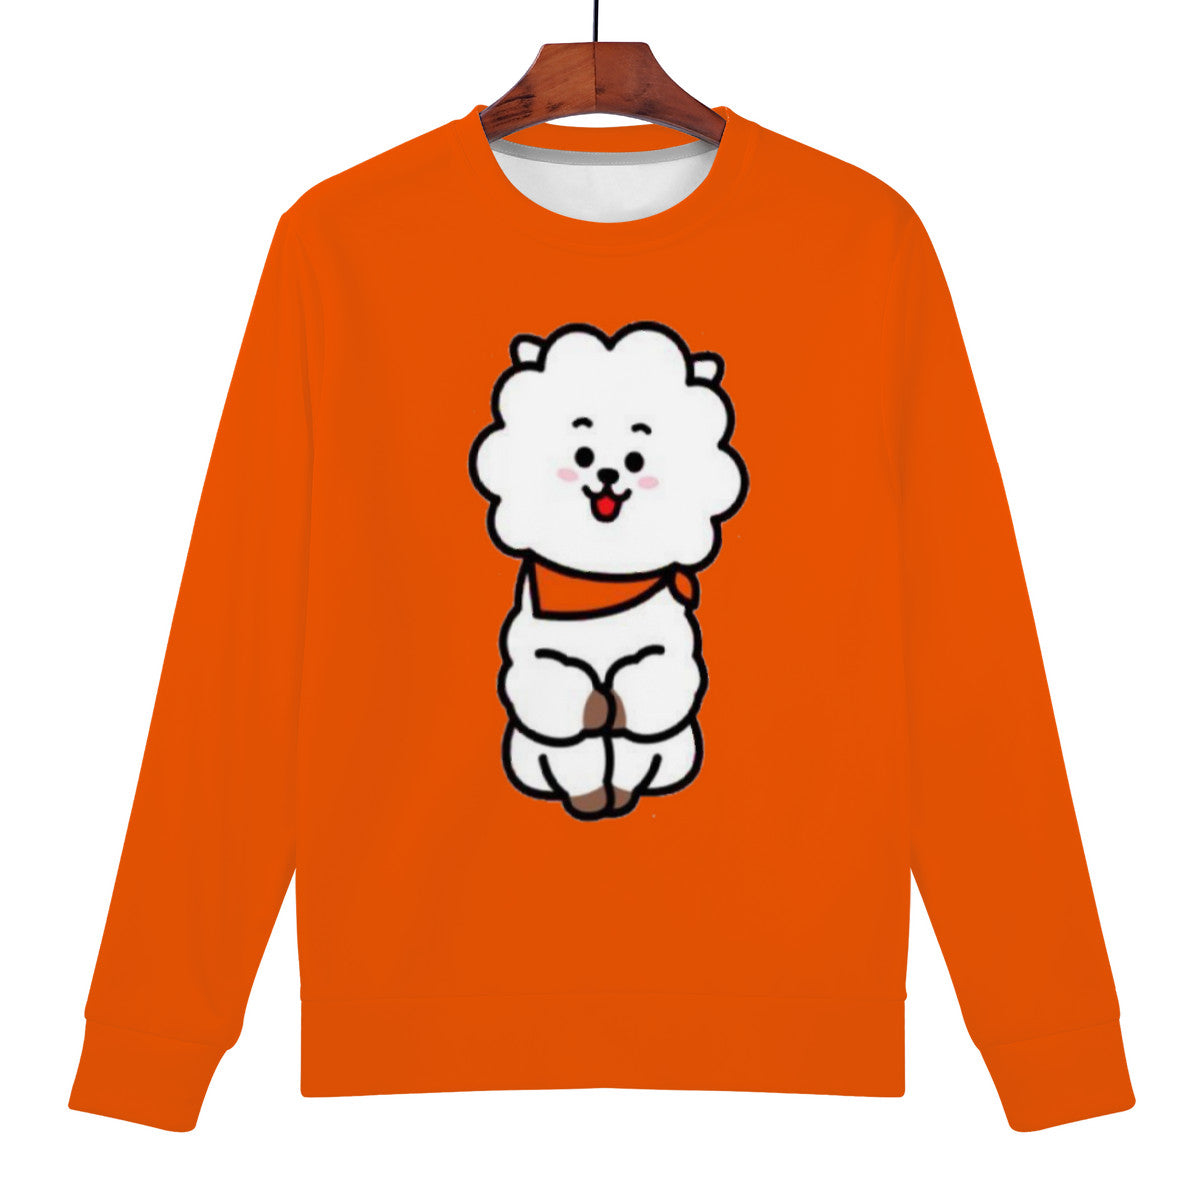 Orange RJ Sweatshirt | BTS BT21 Merchandise